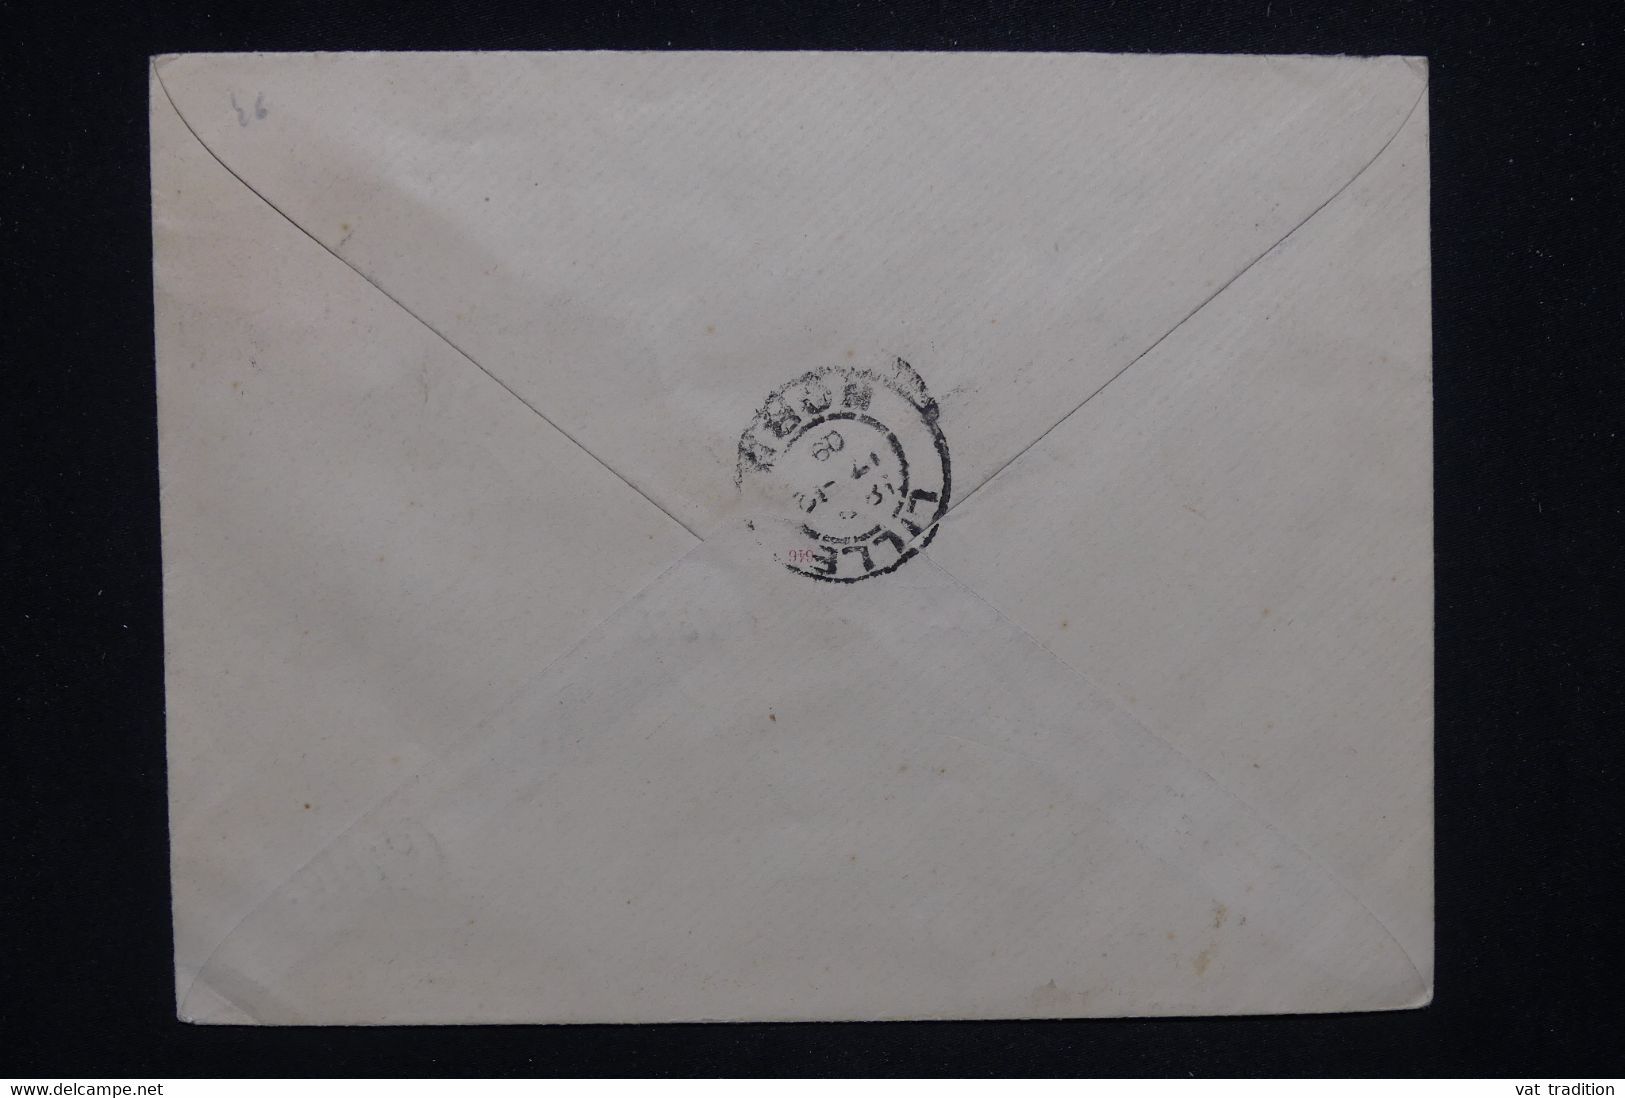 FRANCE - Entier Postal Semeuse ( Enveloppe Avec Repiquage Privé De Lille) De St Nazaire Pour Lille En 1909 - L 130012 - Buste Ristampe (ante 1955)